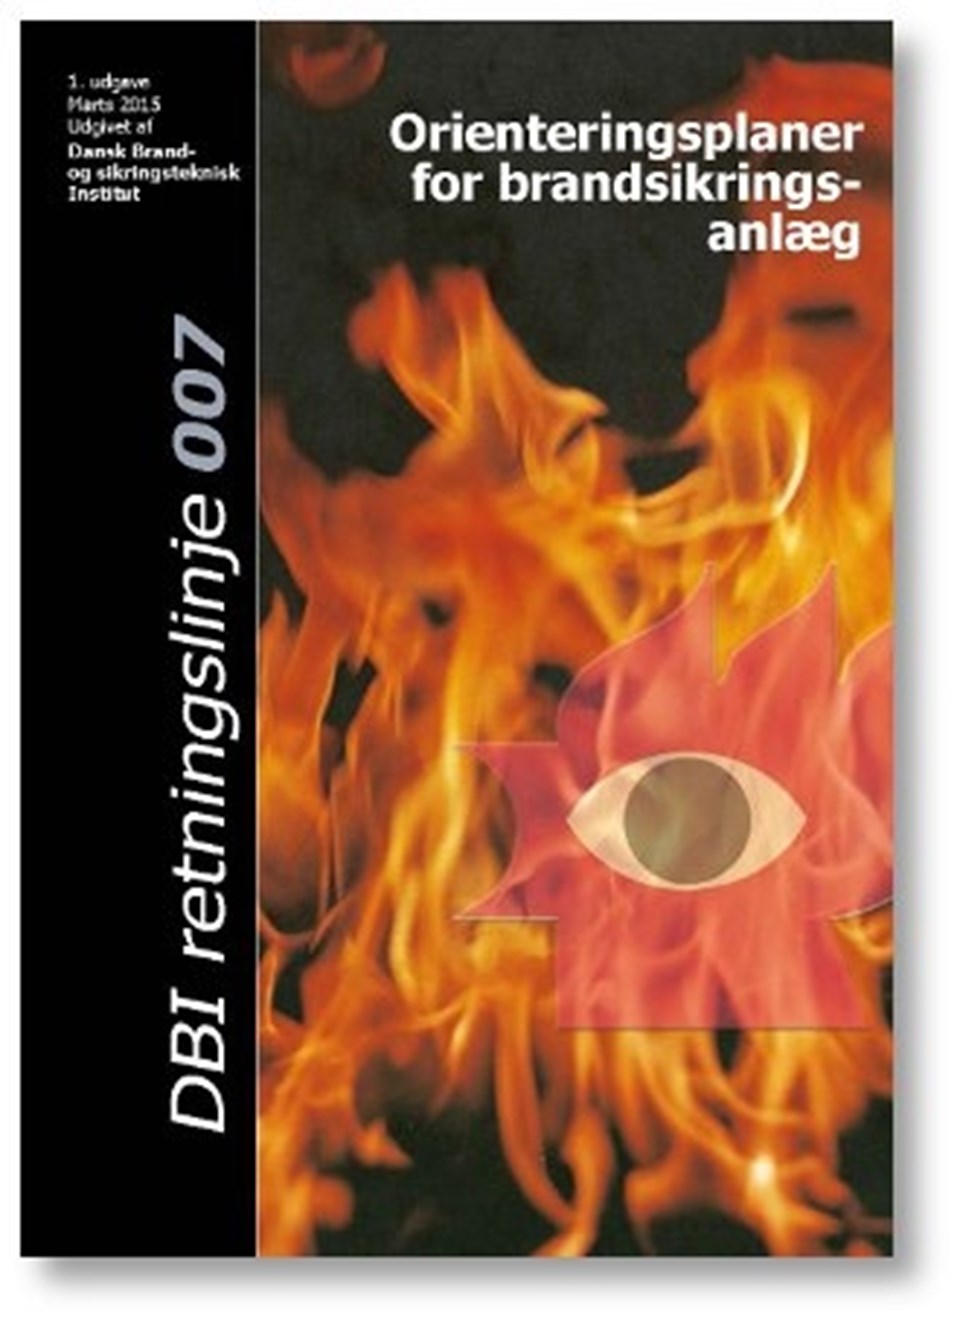 Orienteringsplaner for brandsikringsanlæg e-bog (1)